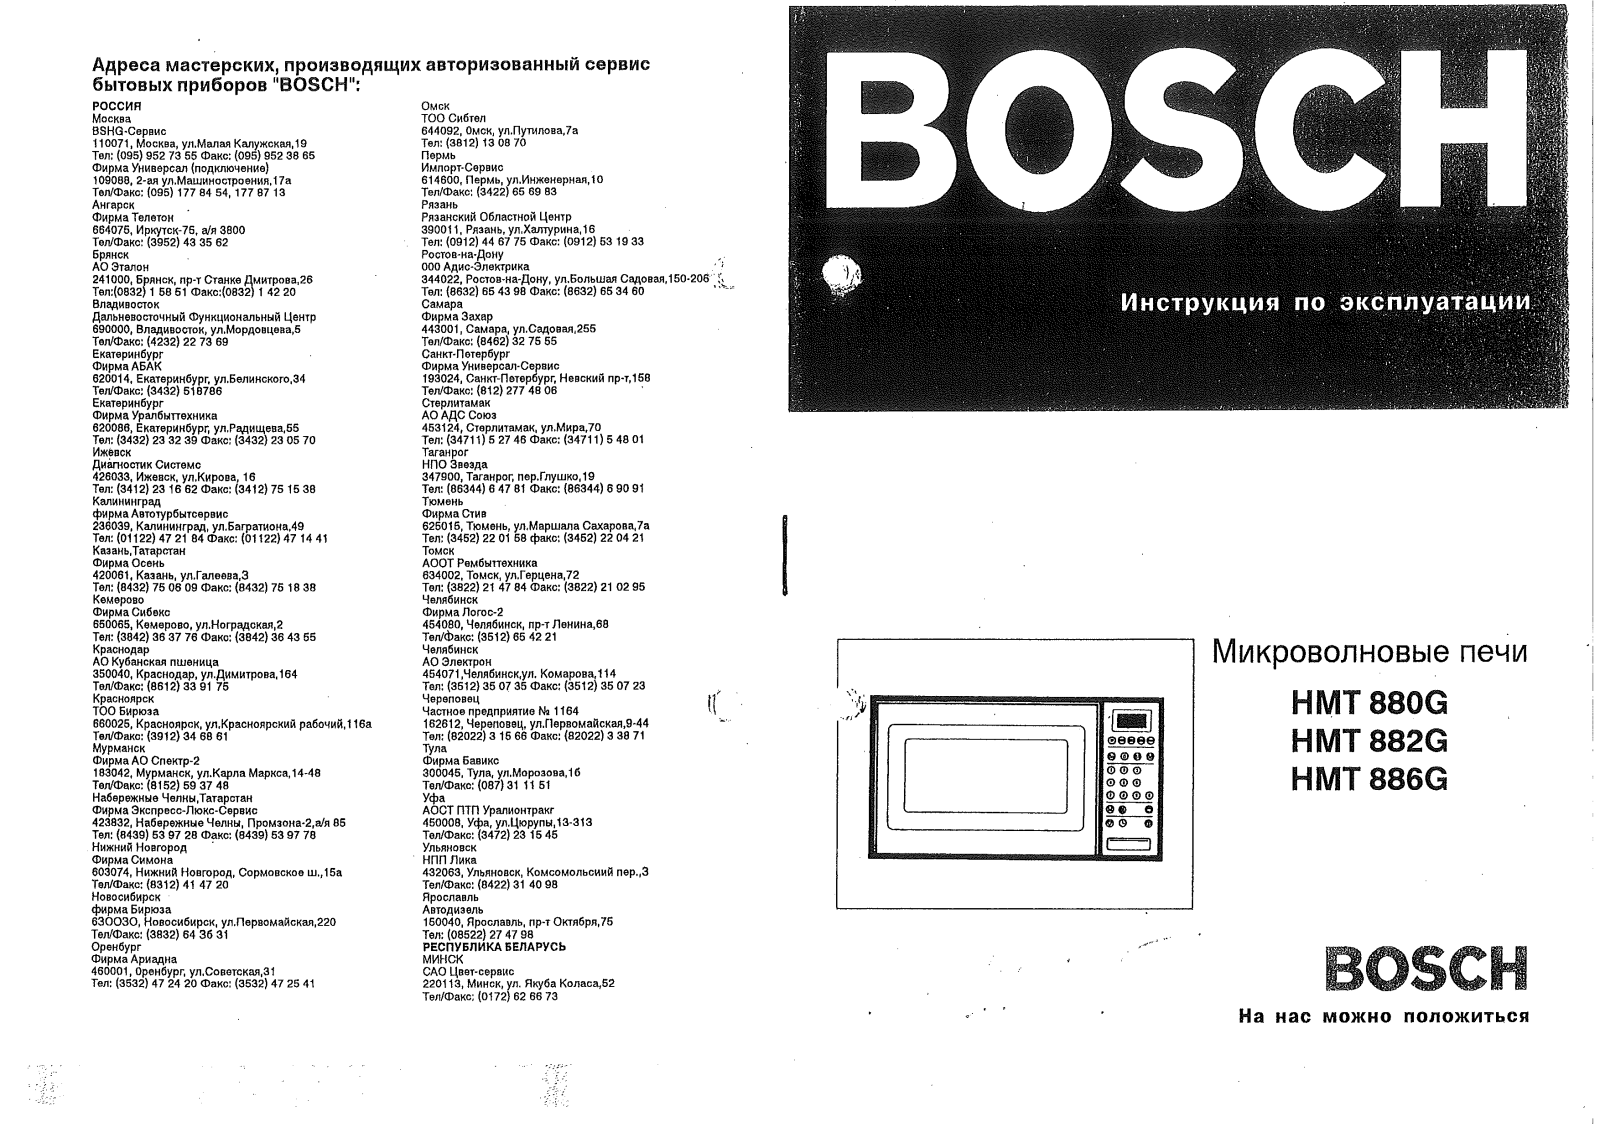 BOSCH HMT 880G User Manual